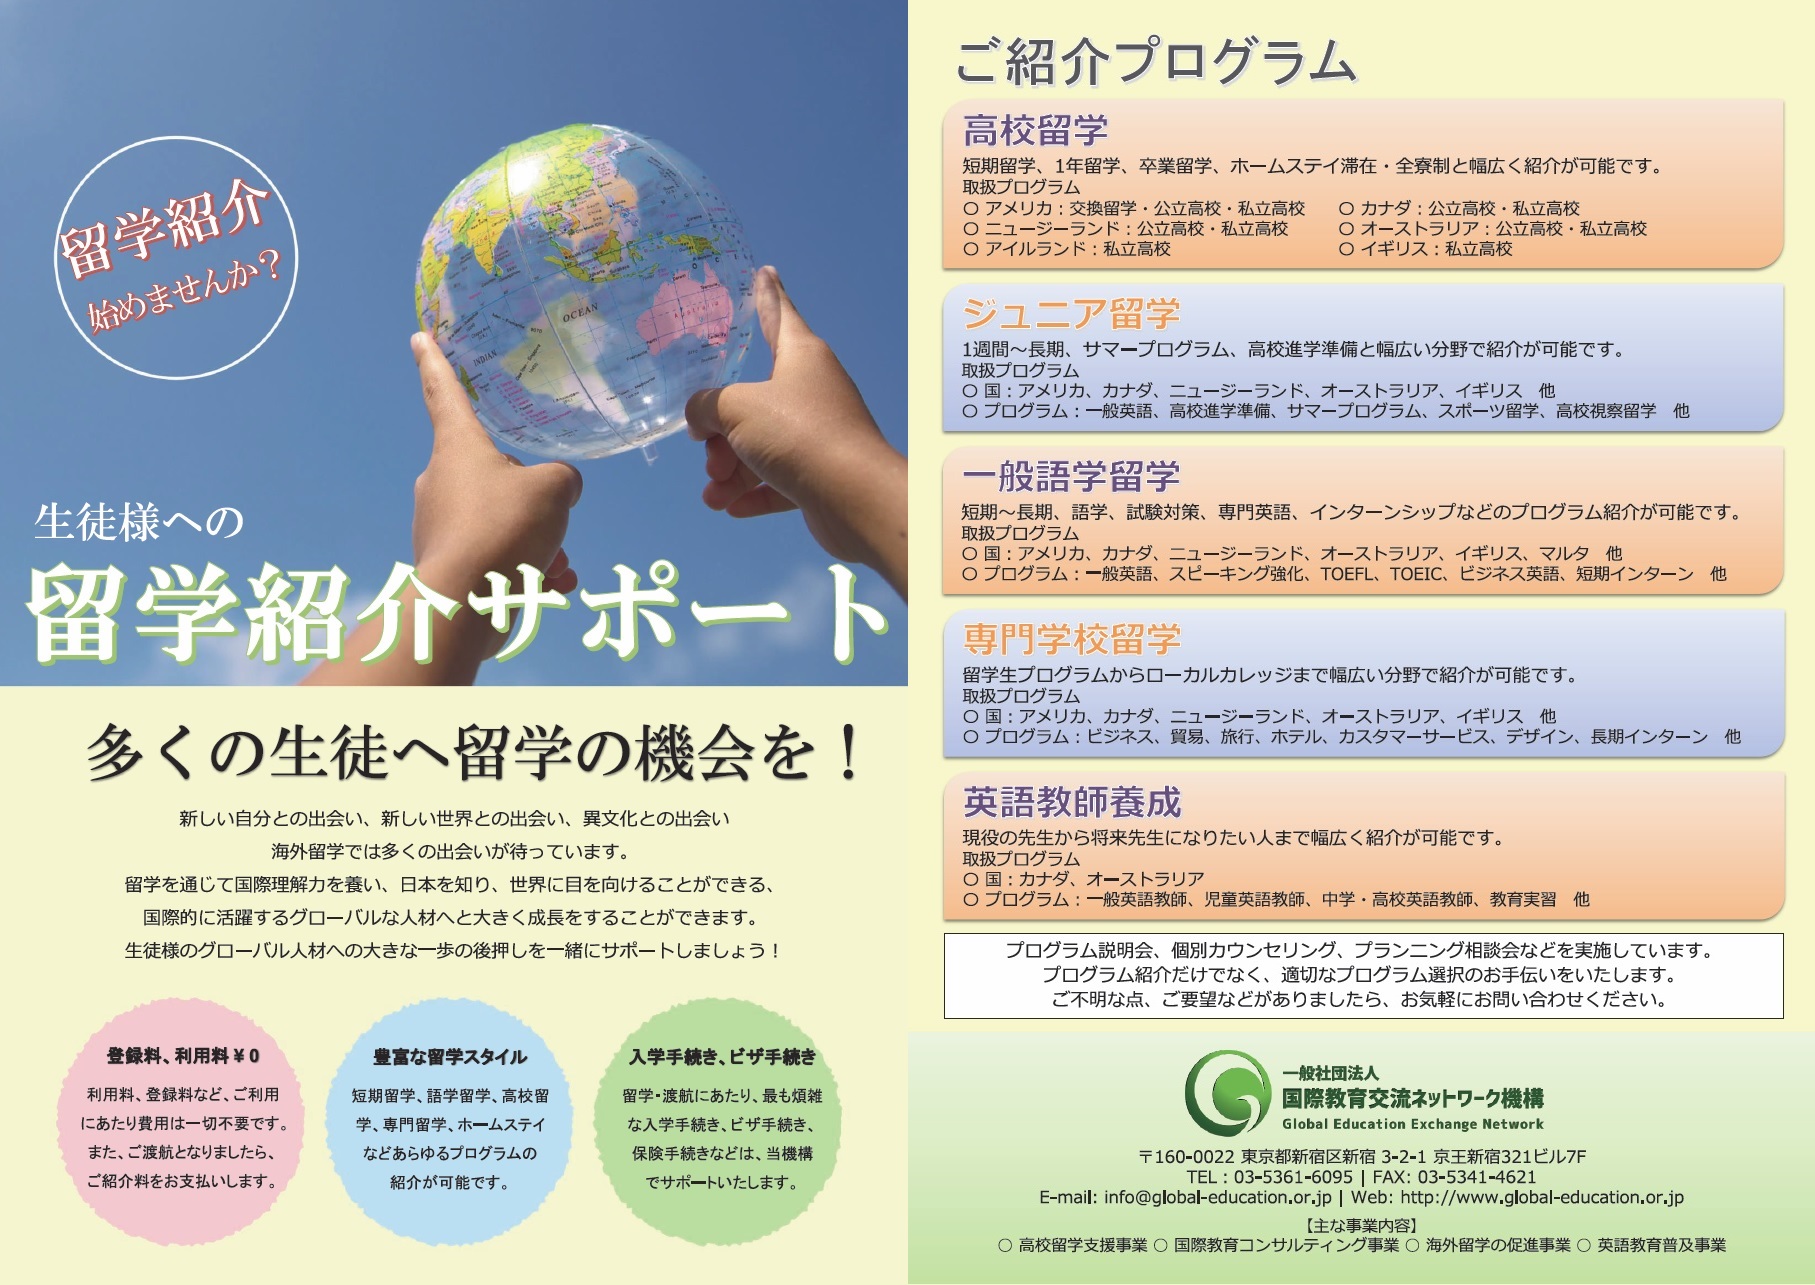 日本の教育機関へのコンサルティング業